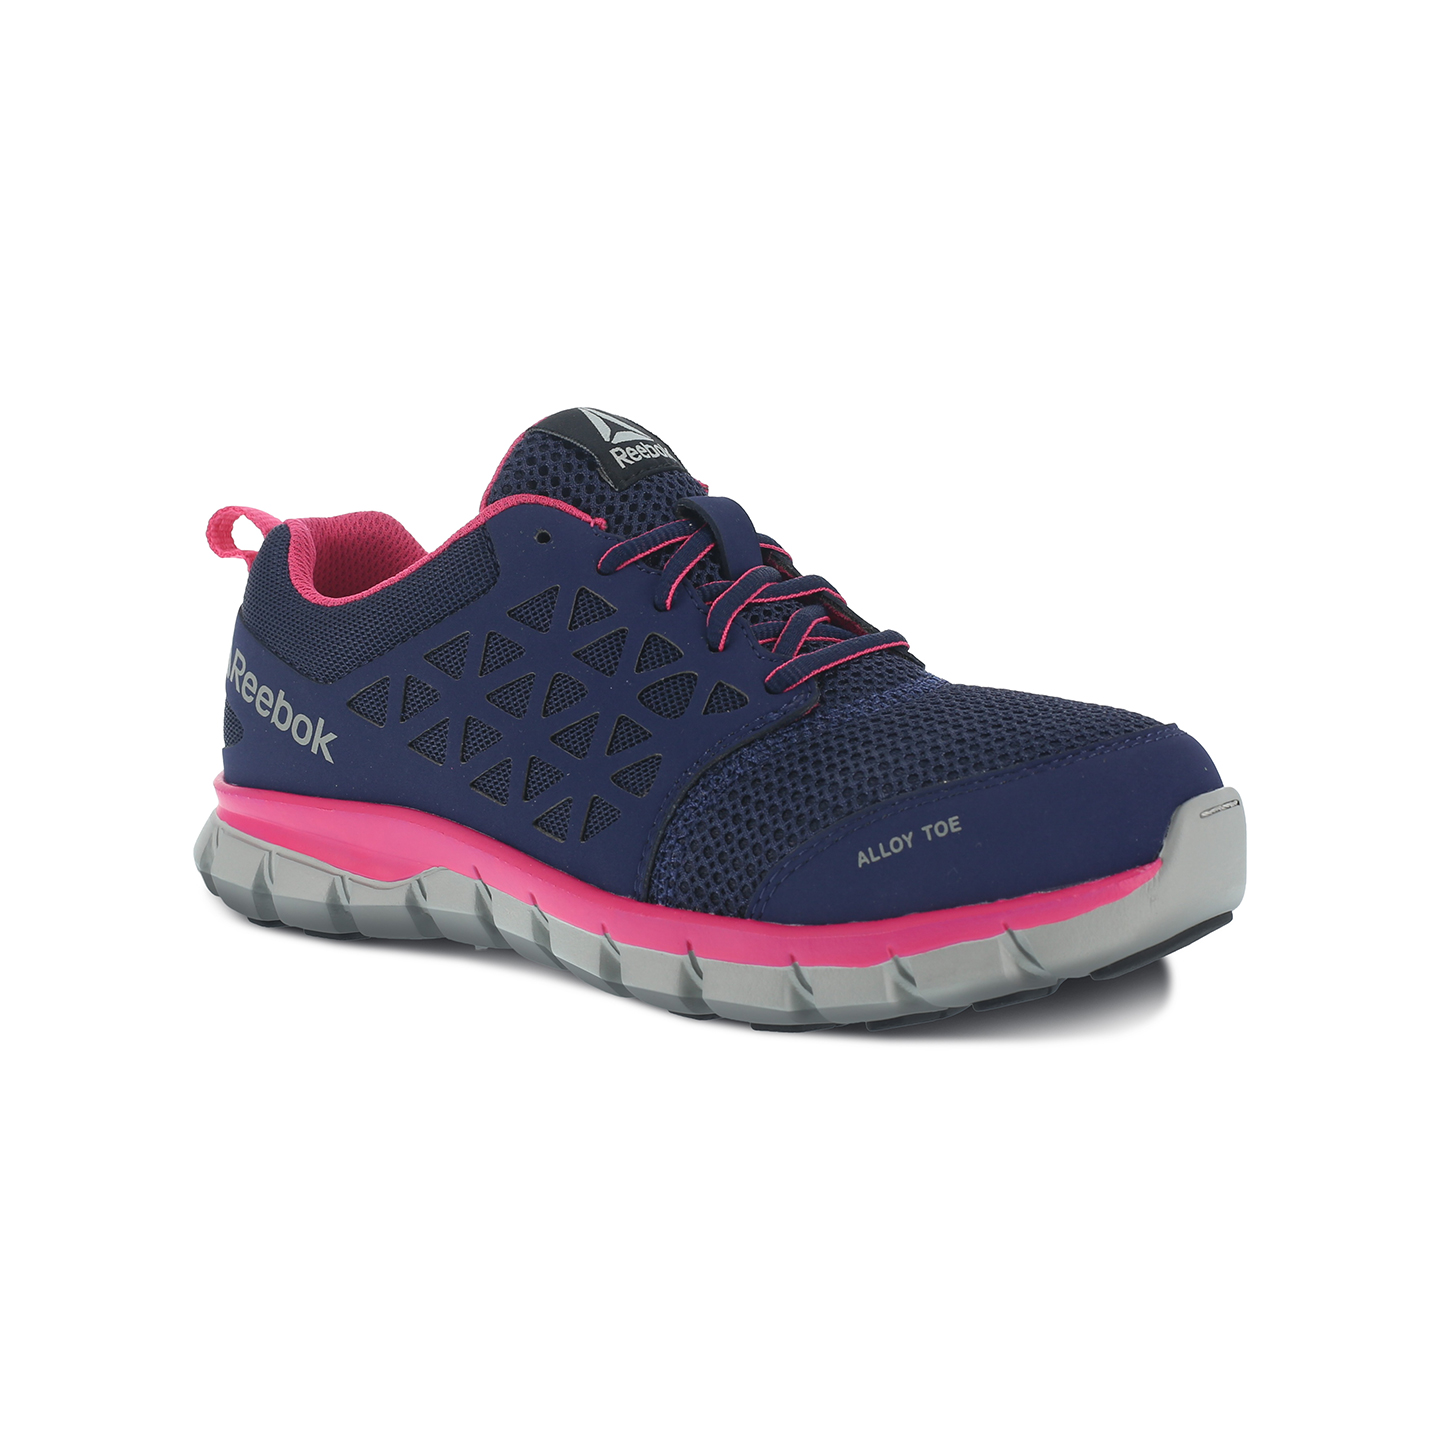 Reebok Sublite Cushion Womens Aluminum Toe Electrical Hazard Athletic Work Shoe Size 10.5(M) - image 1 of 3